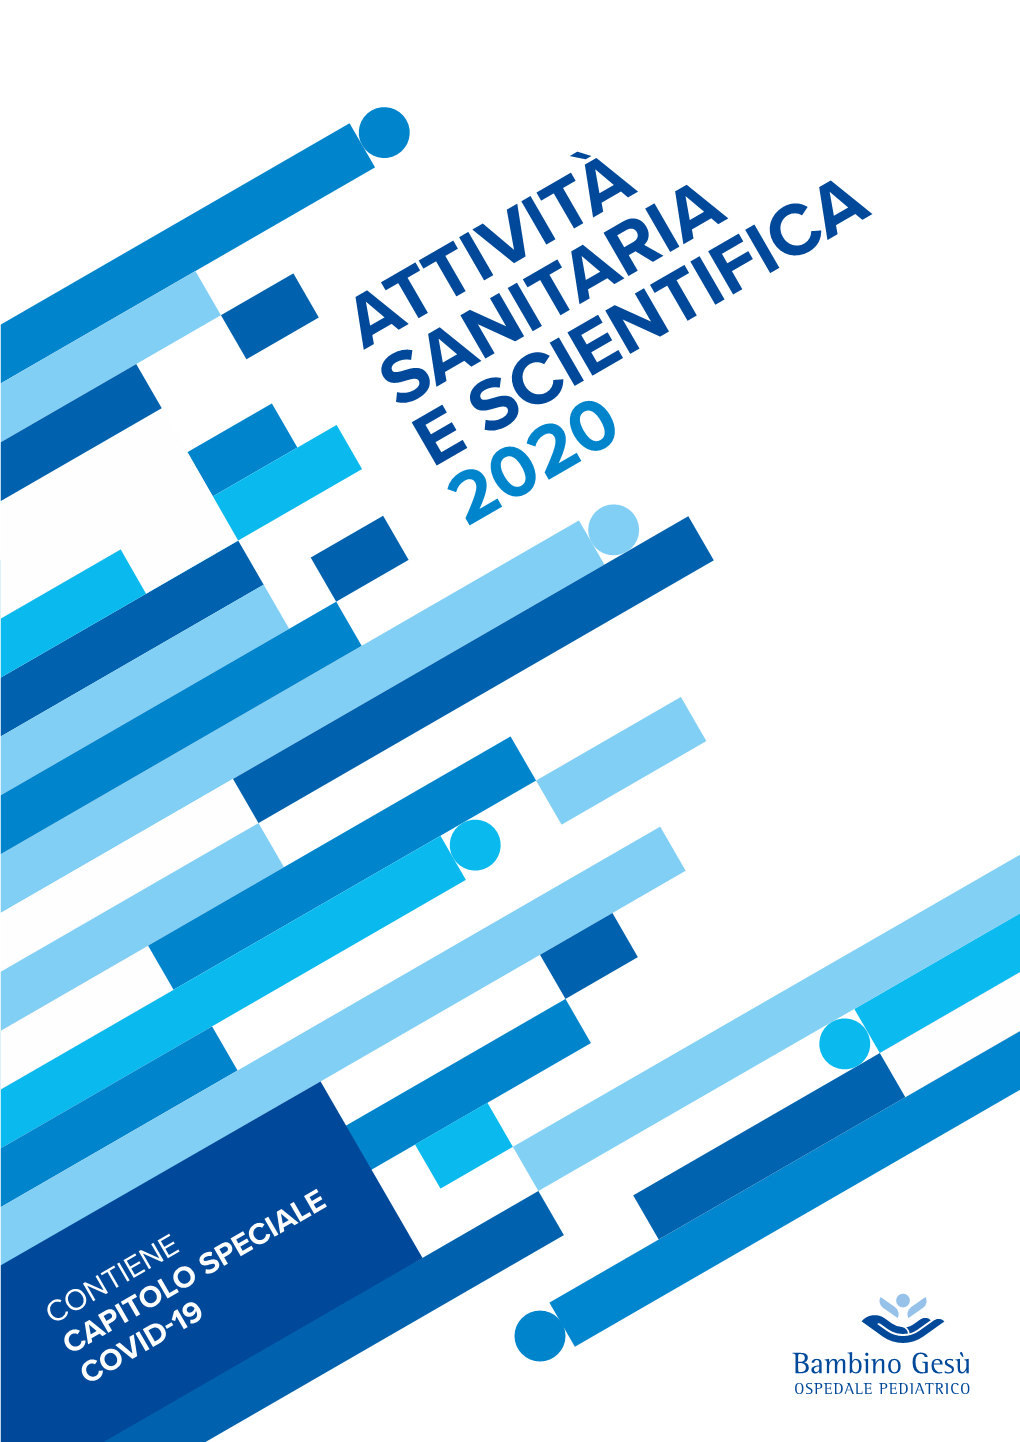 A Ttività S Anitaria E Scientific a 2020